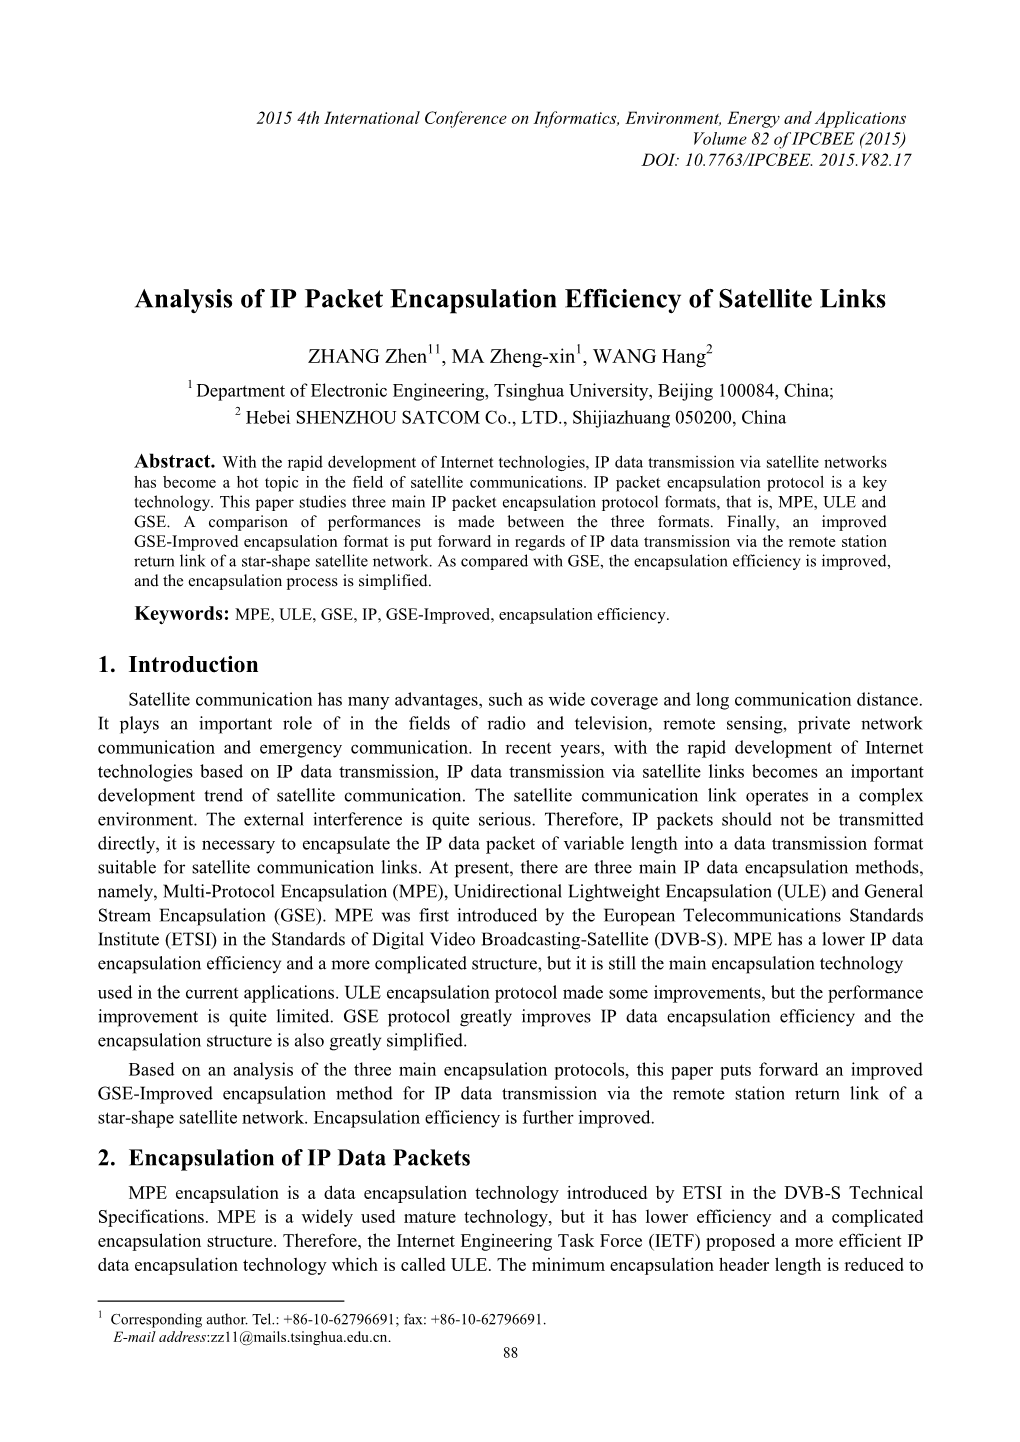 Analysis of IP Packet Encapsulation Efficiency of Satellite Links